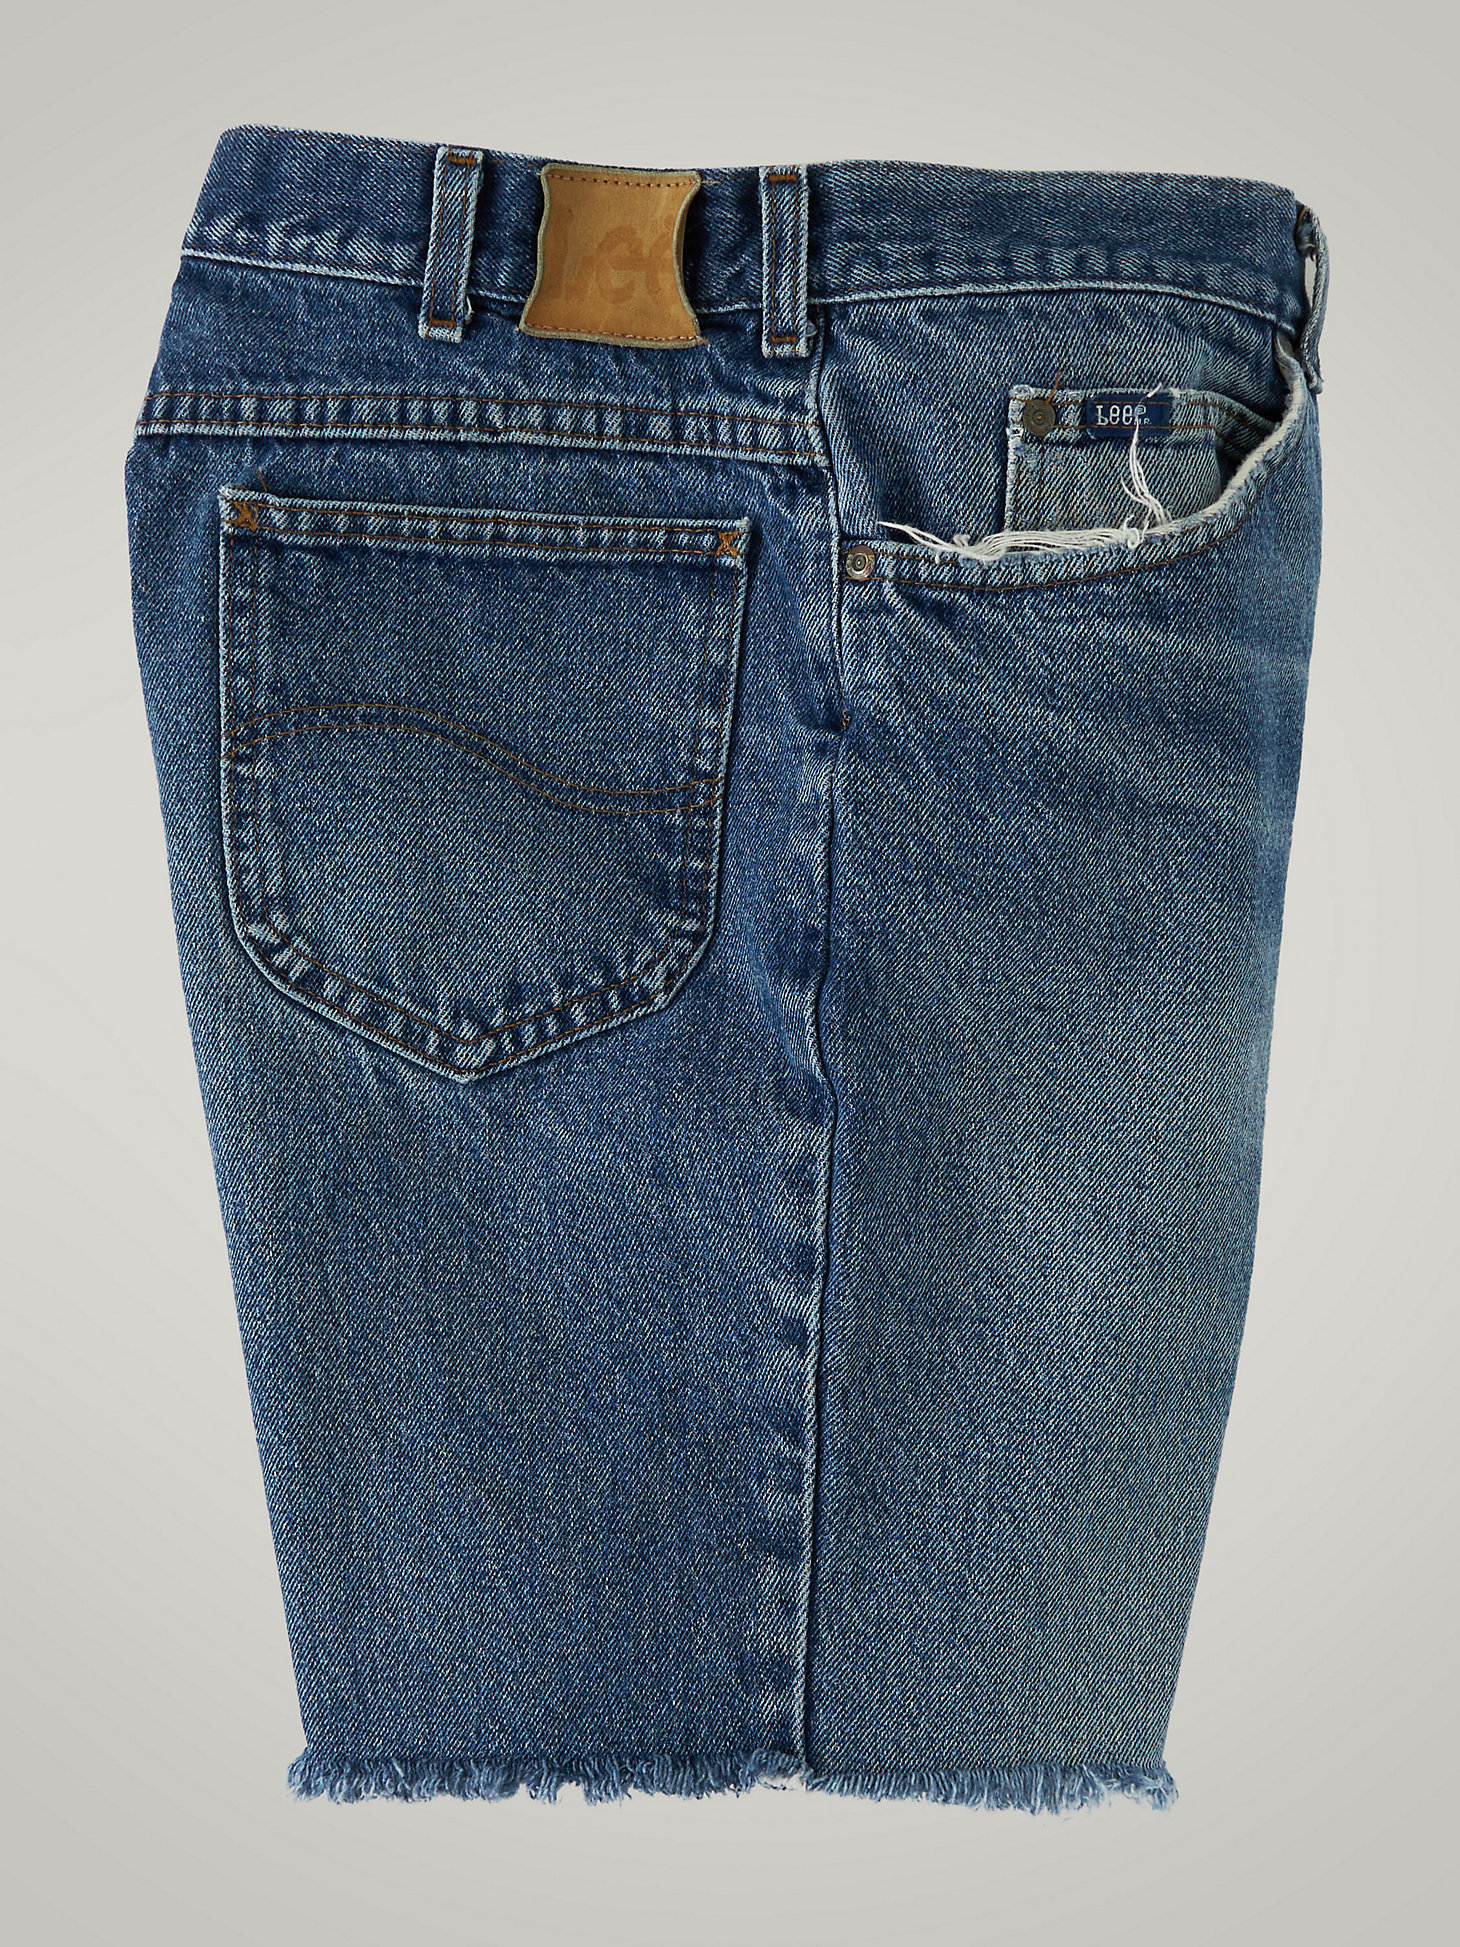 Men's Vintage Cut-Off Shorts MS02 (Size 36) | Men's | Lee®